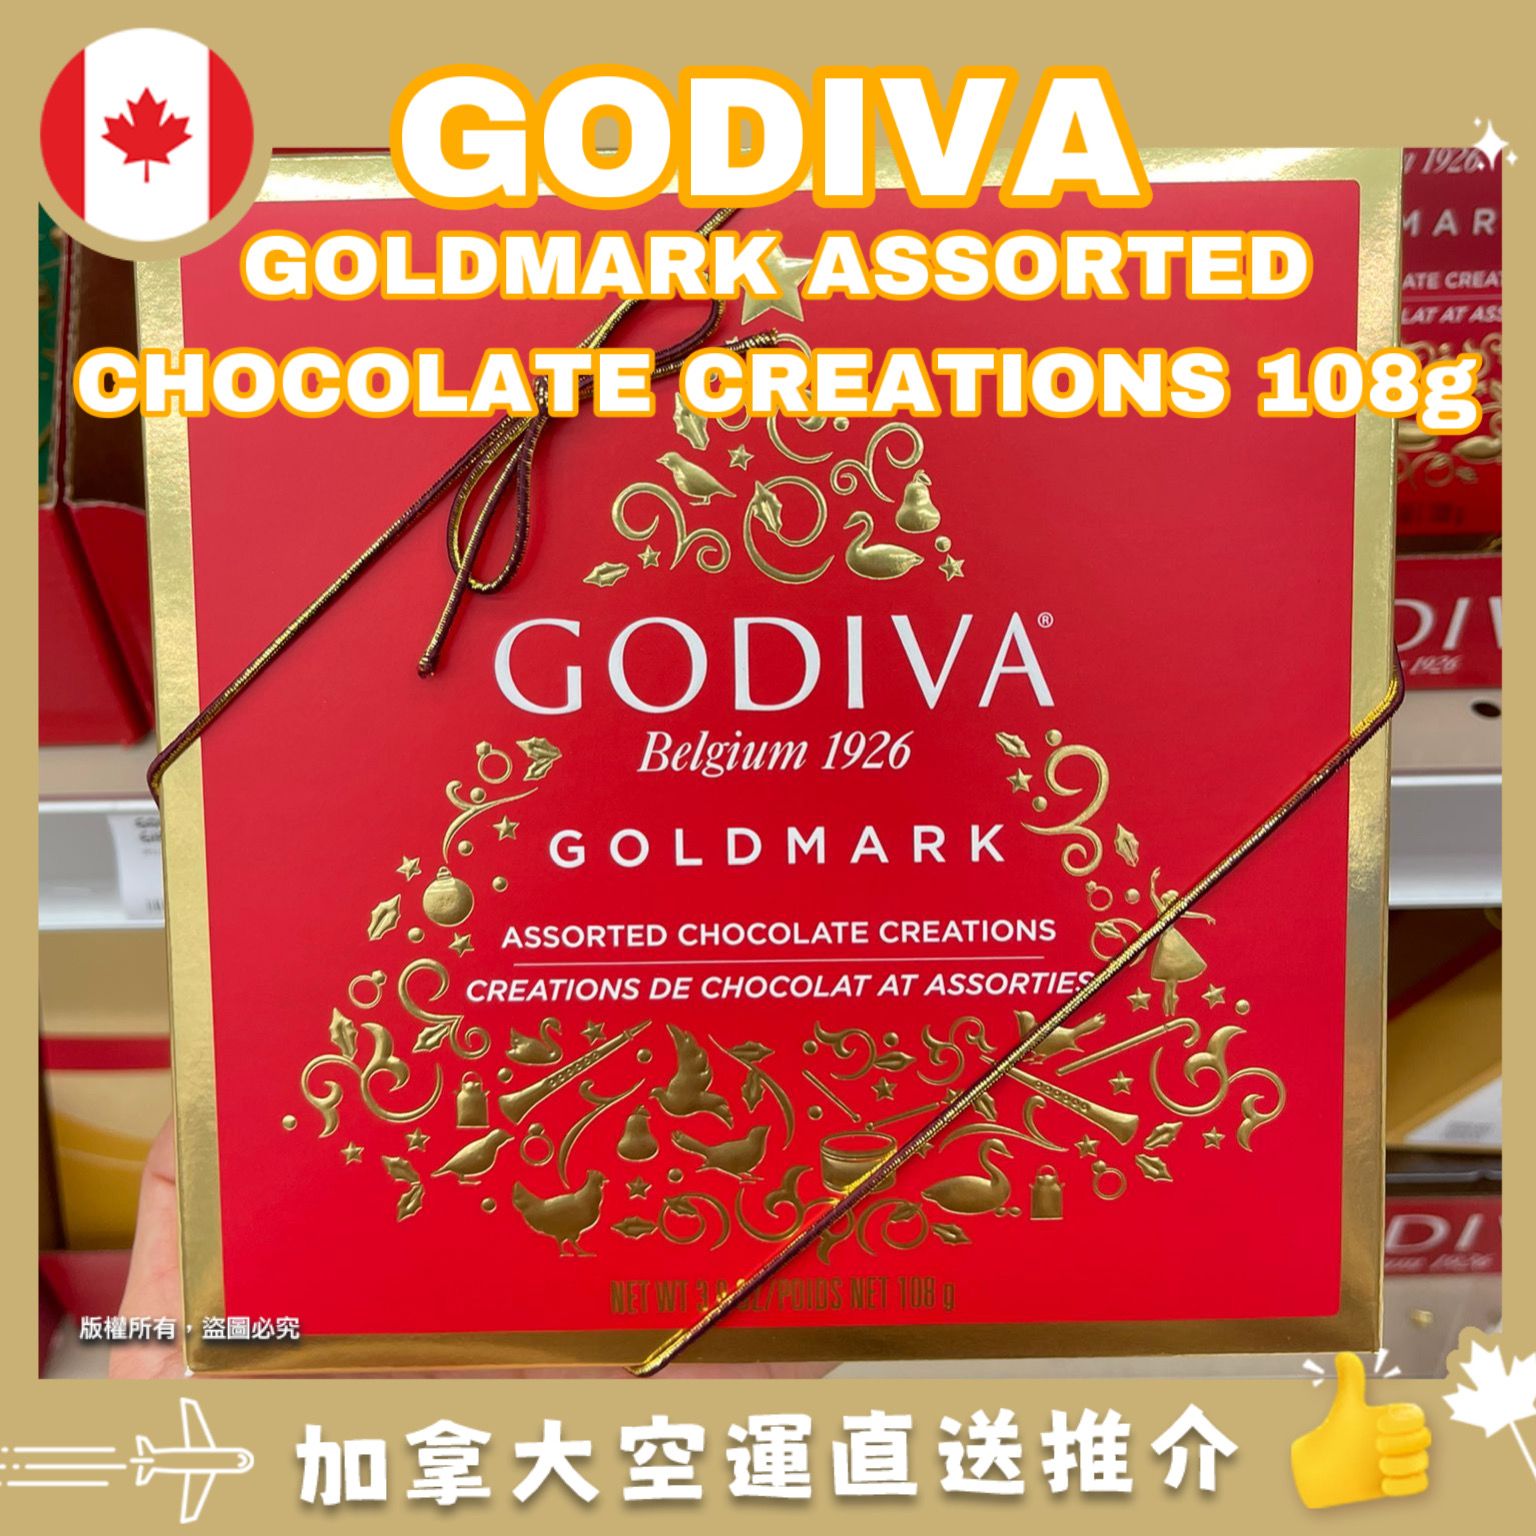 【加拿大空運直送】【加拿大聖誕節限定】 Godiva Goldmark Assorted Chocolates Creation 聖誕巧克力禮物盒 108g